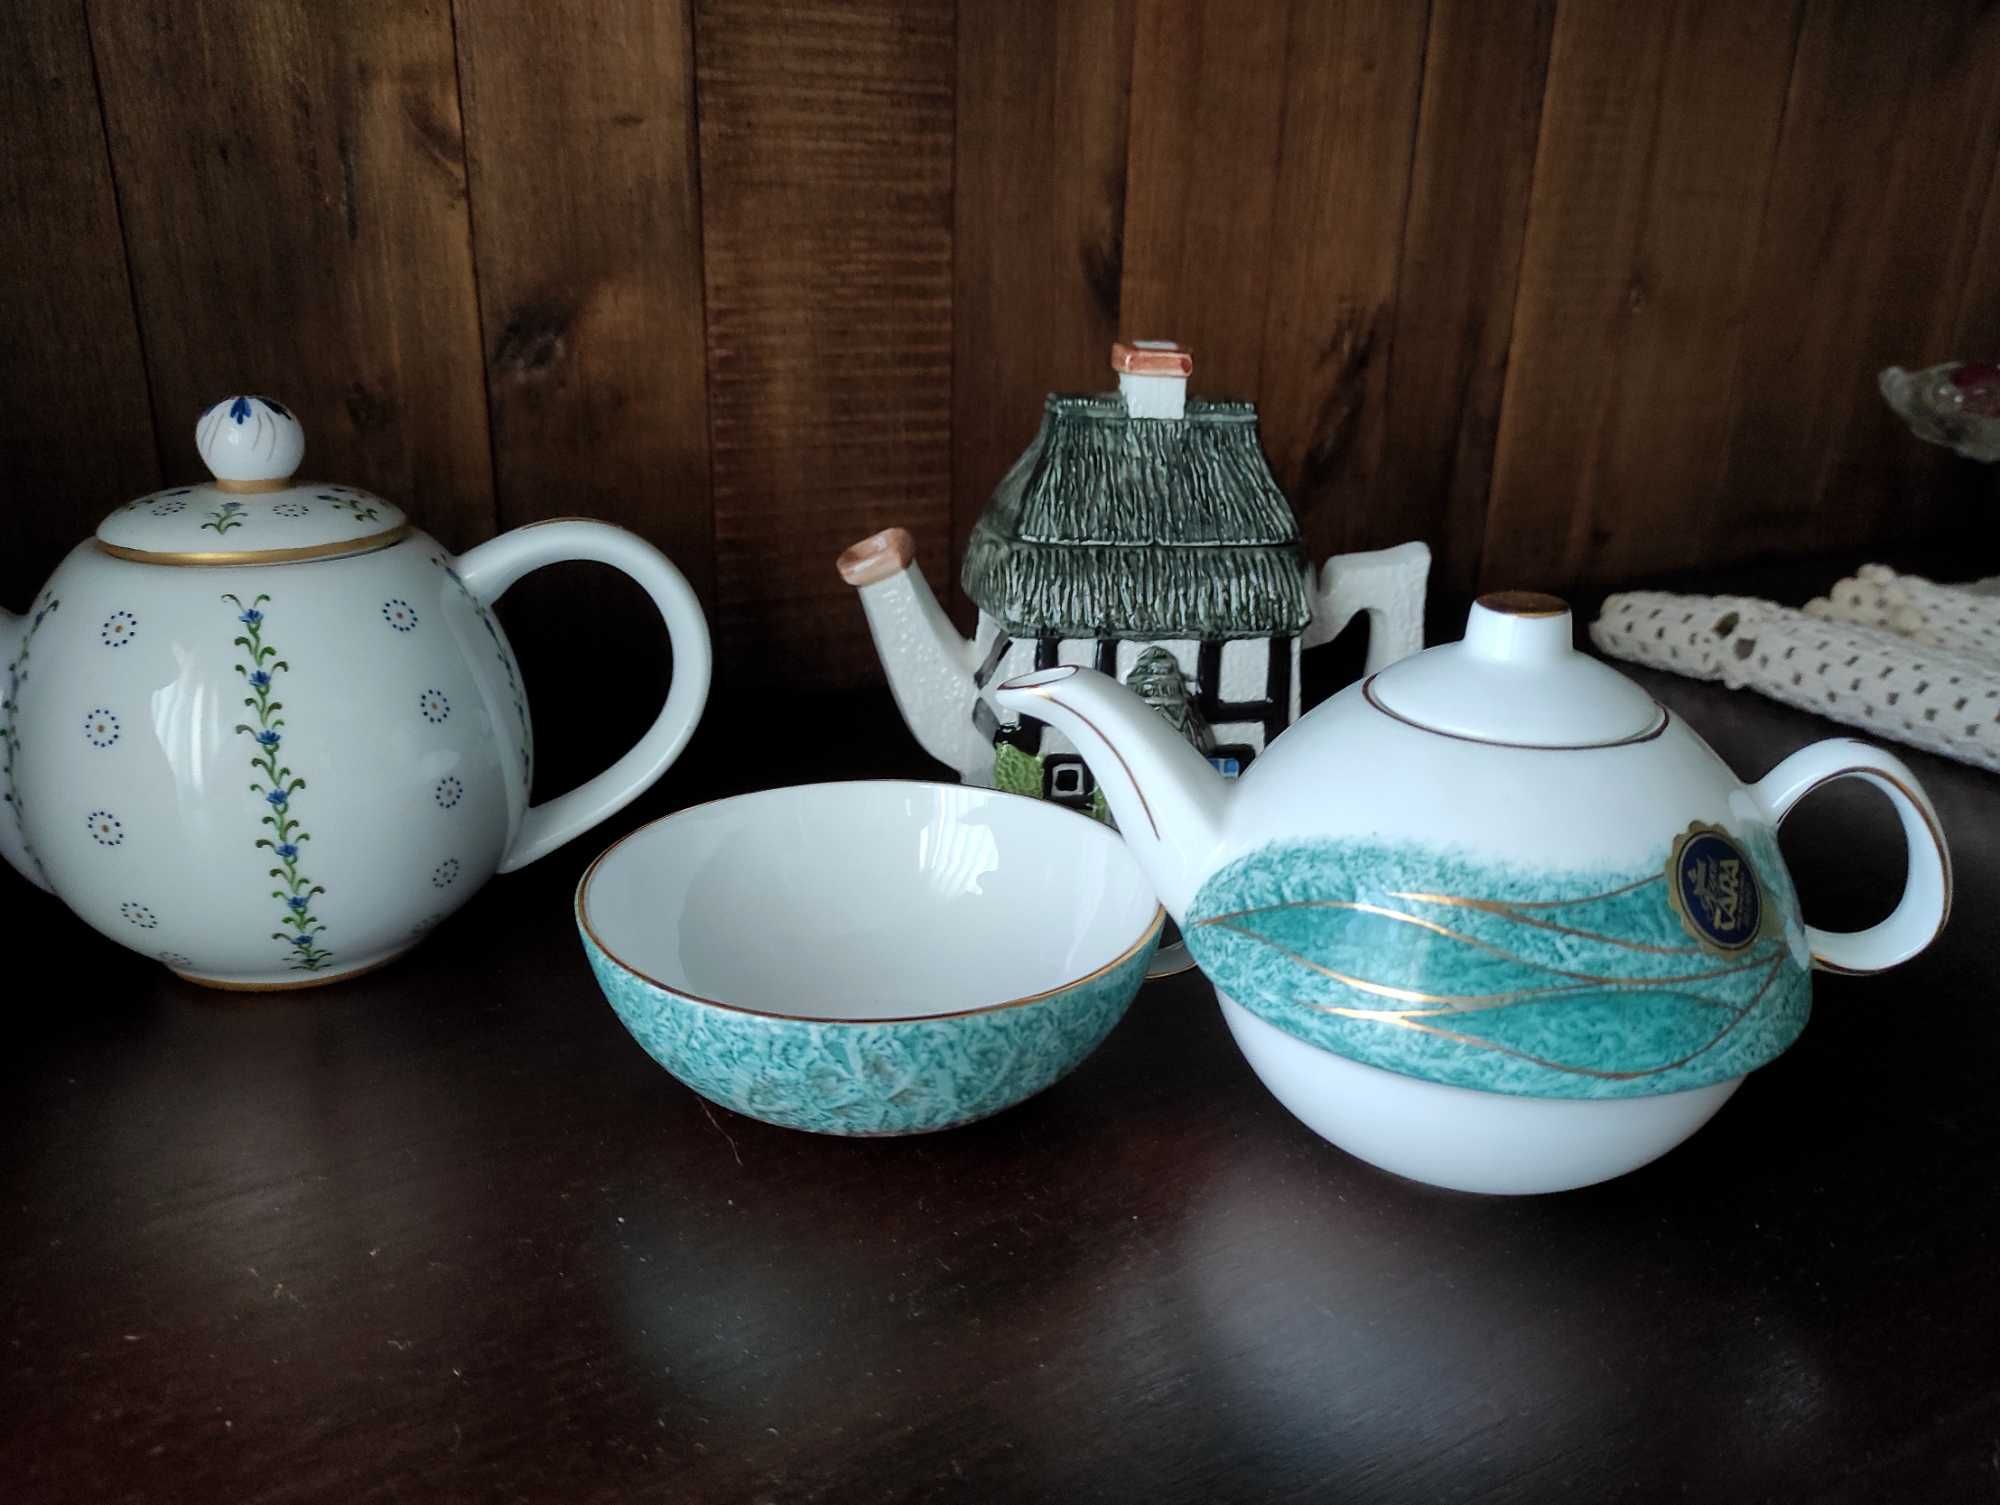 Bules de chá em porcelana lindos